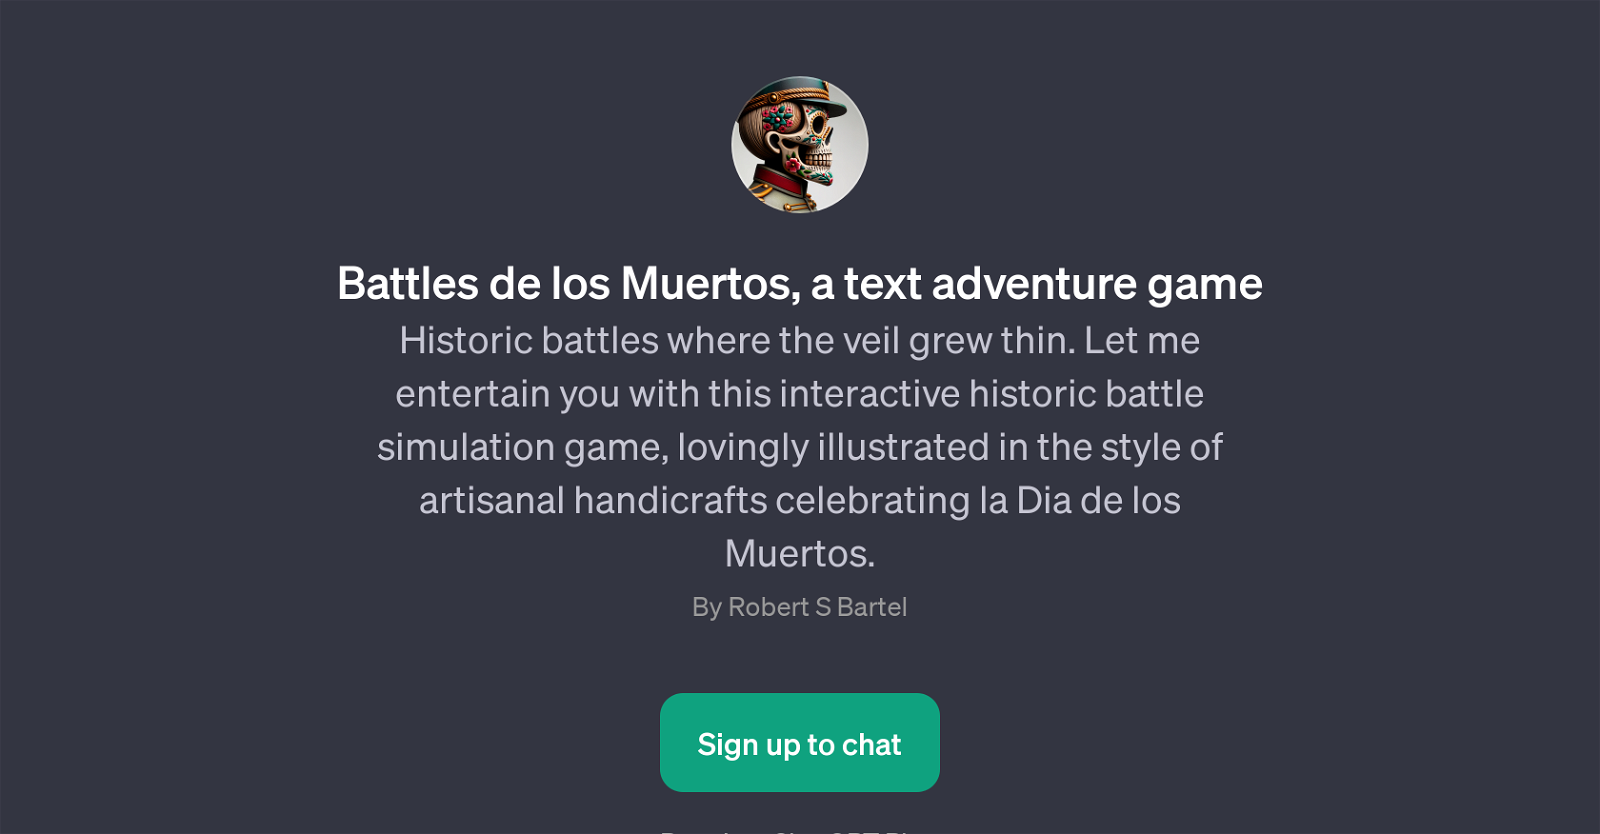 Battles de los Muertos website